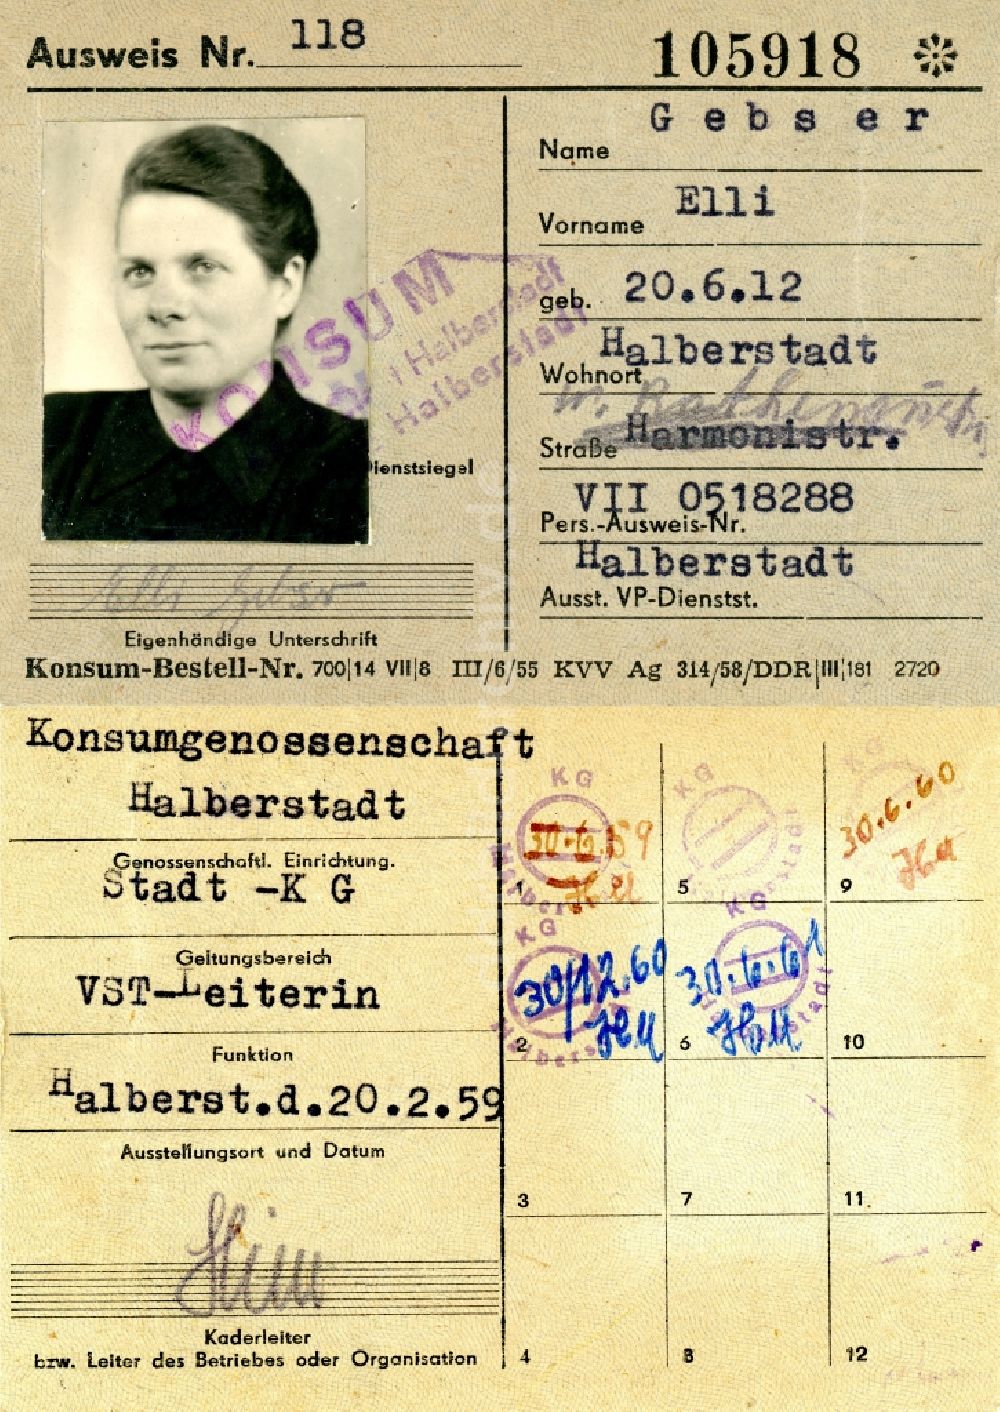 Halberstadt: Mitgliedsausweis der Konsumgenossenschaft ausgestellt in Halberstadt im Bundesland Sachsen-Anhalt auf dem Gebiet der ehemaligen DDR, Deutsche Demokratische Republik